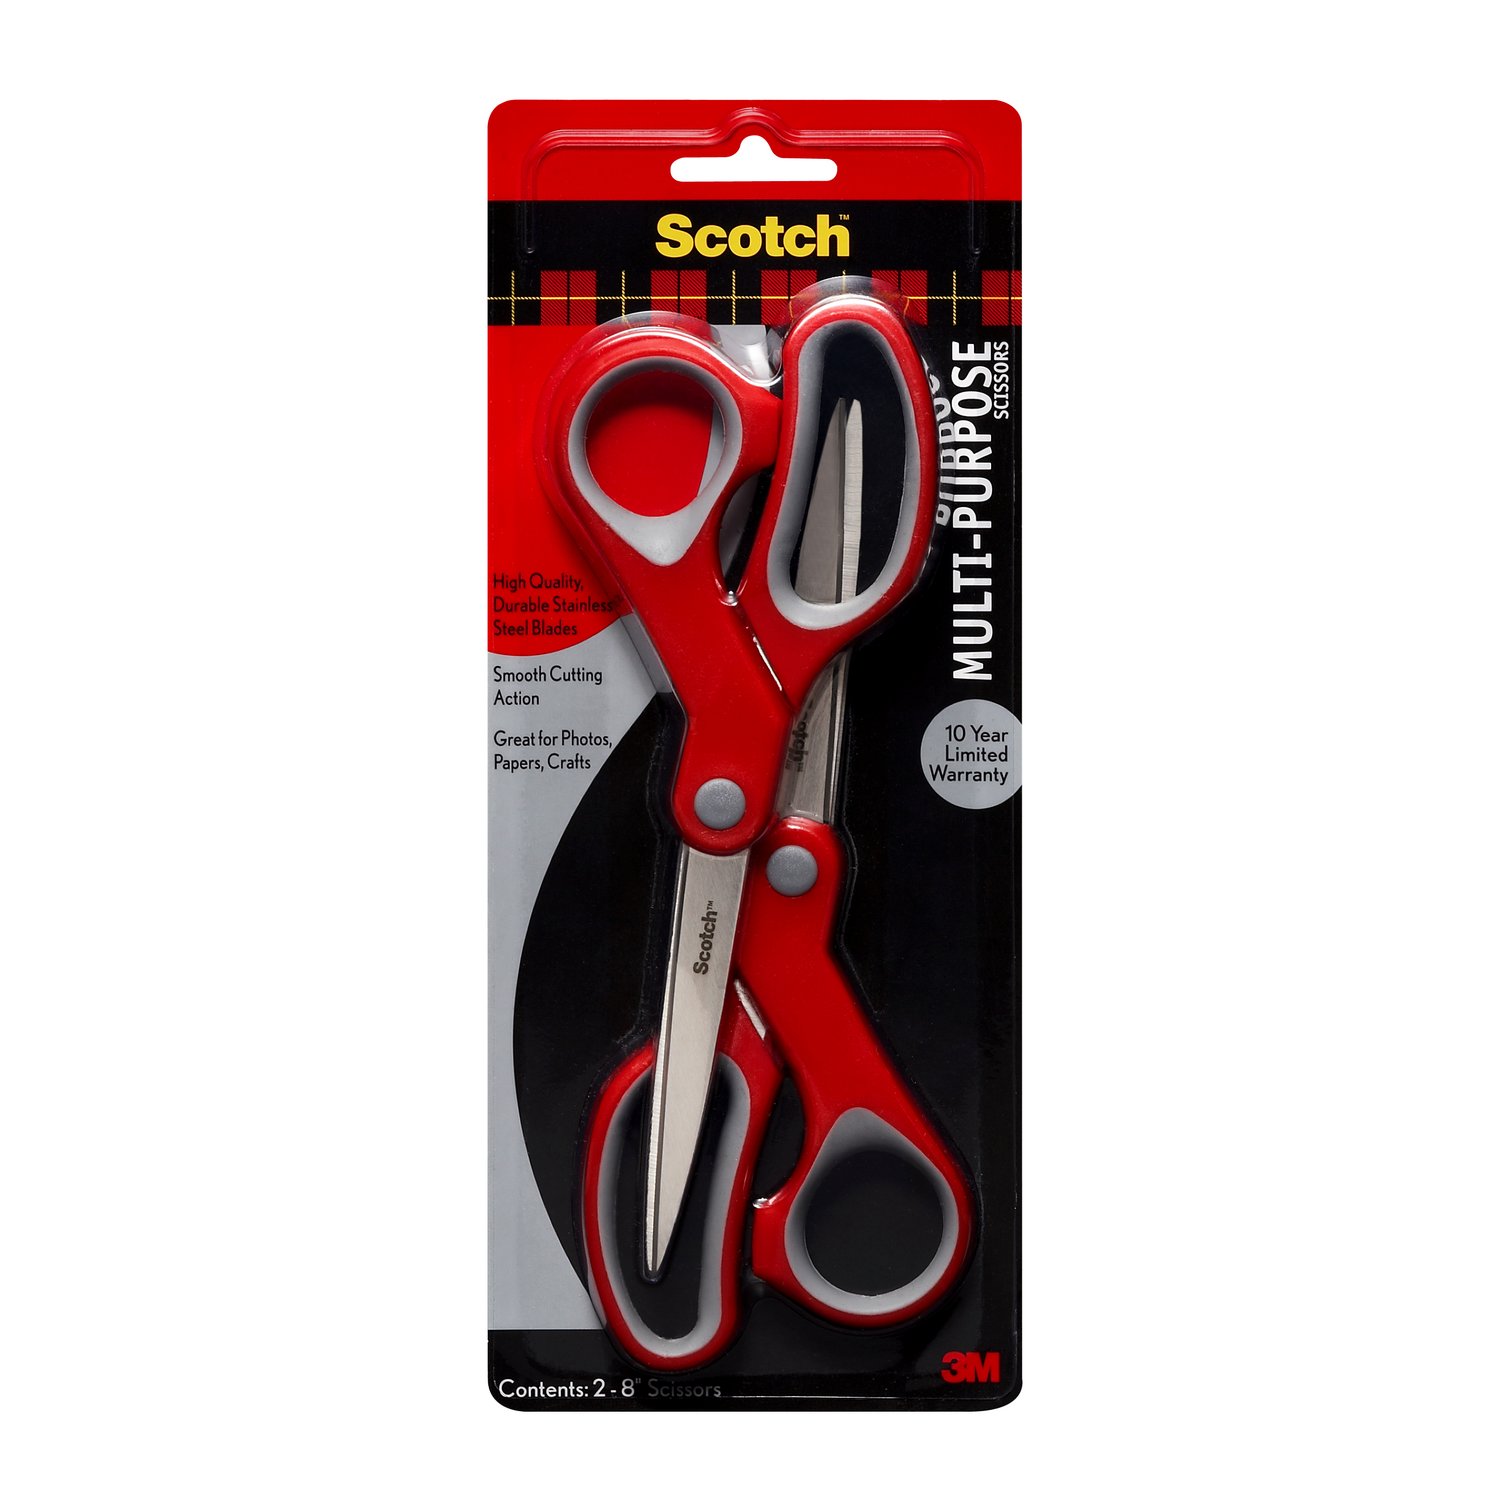 7010371428 - Scotch Multi-Purpose Scissor, 1428-2, 8 in, 2-Pack